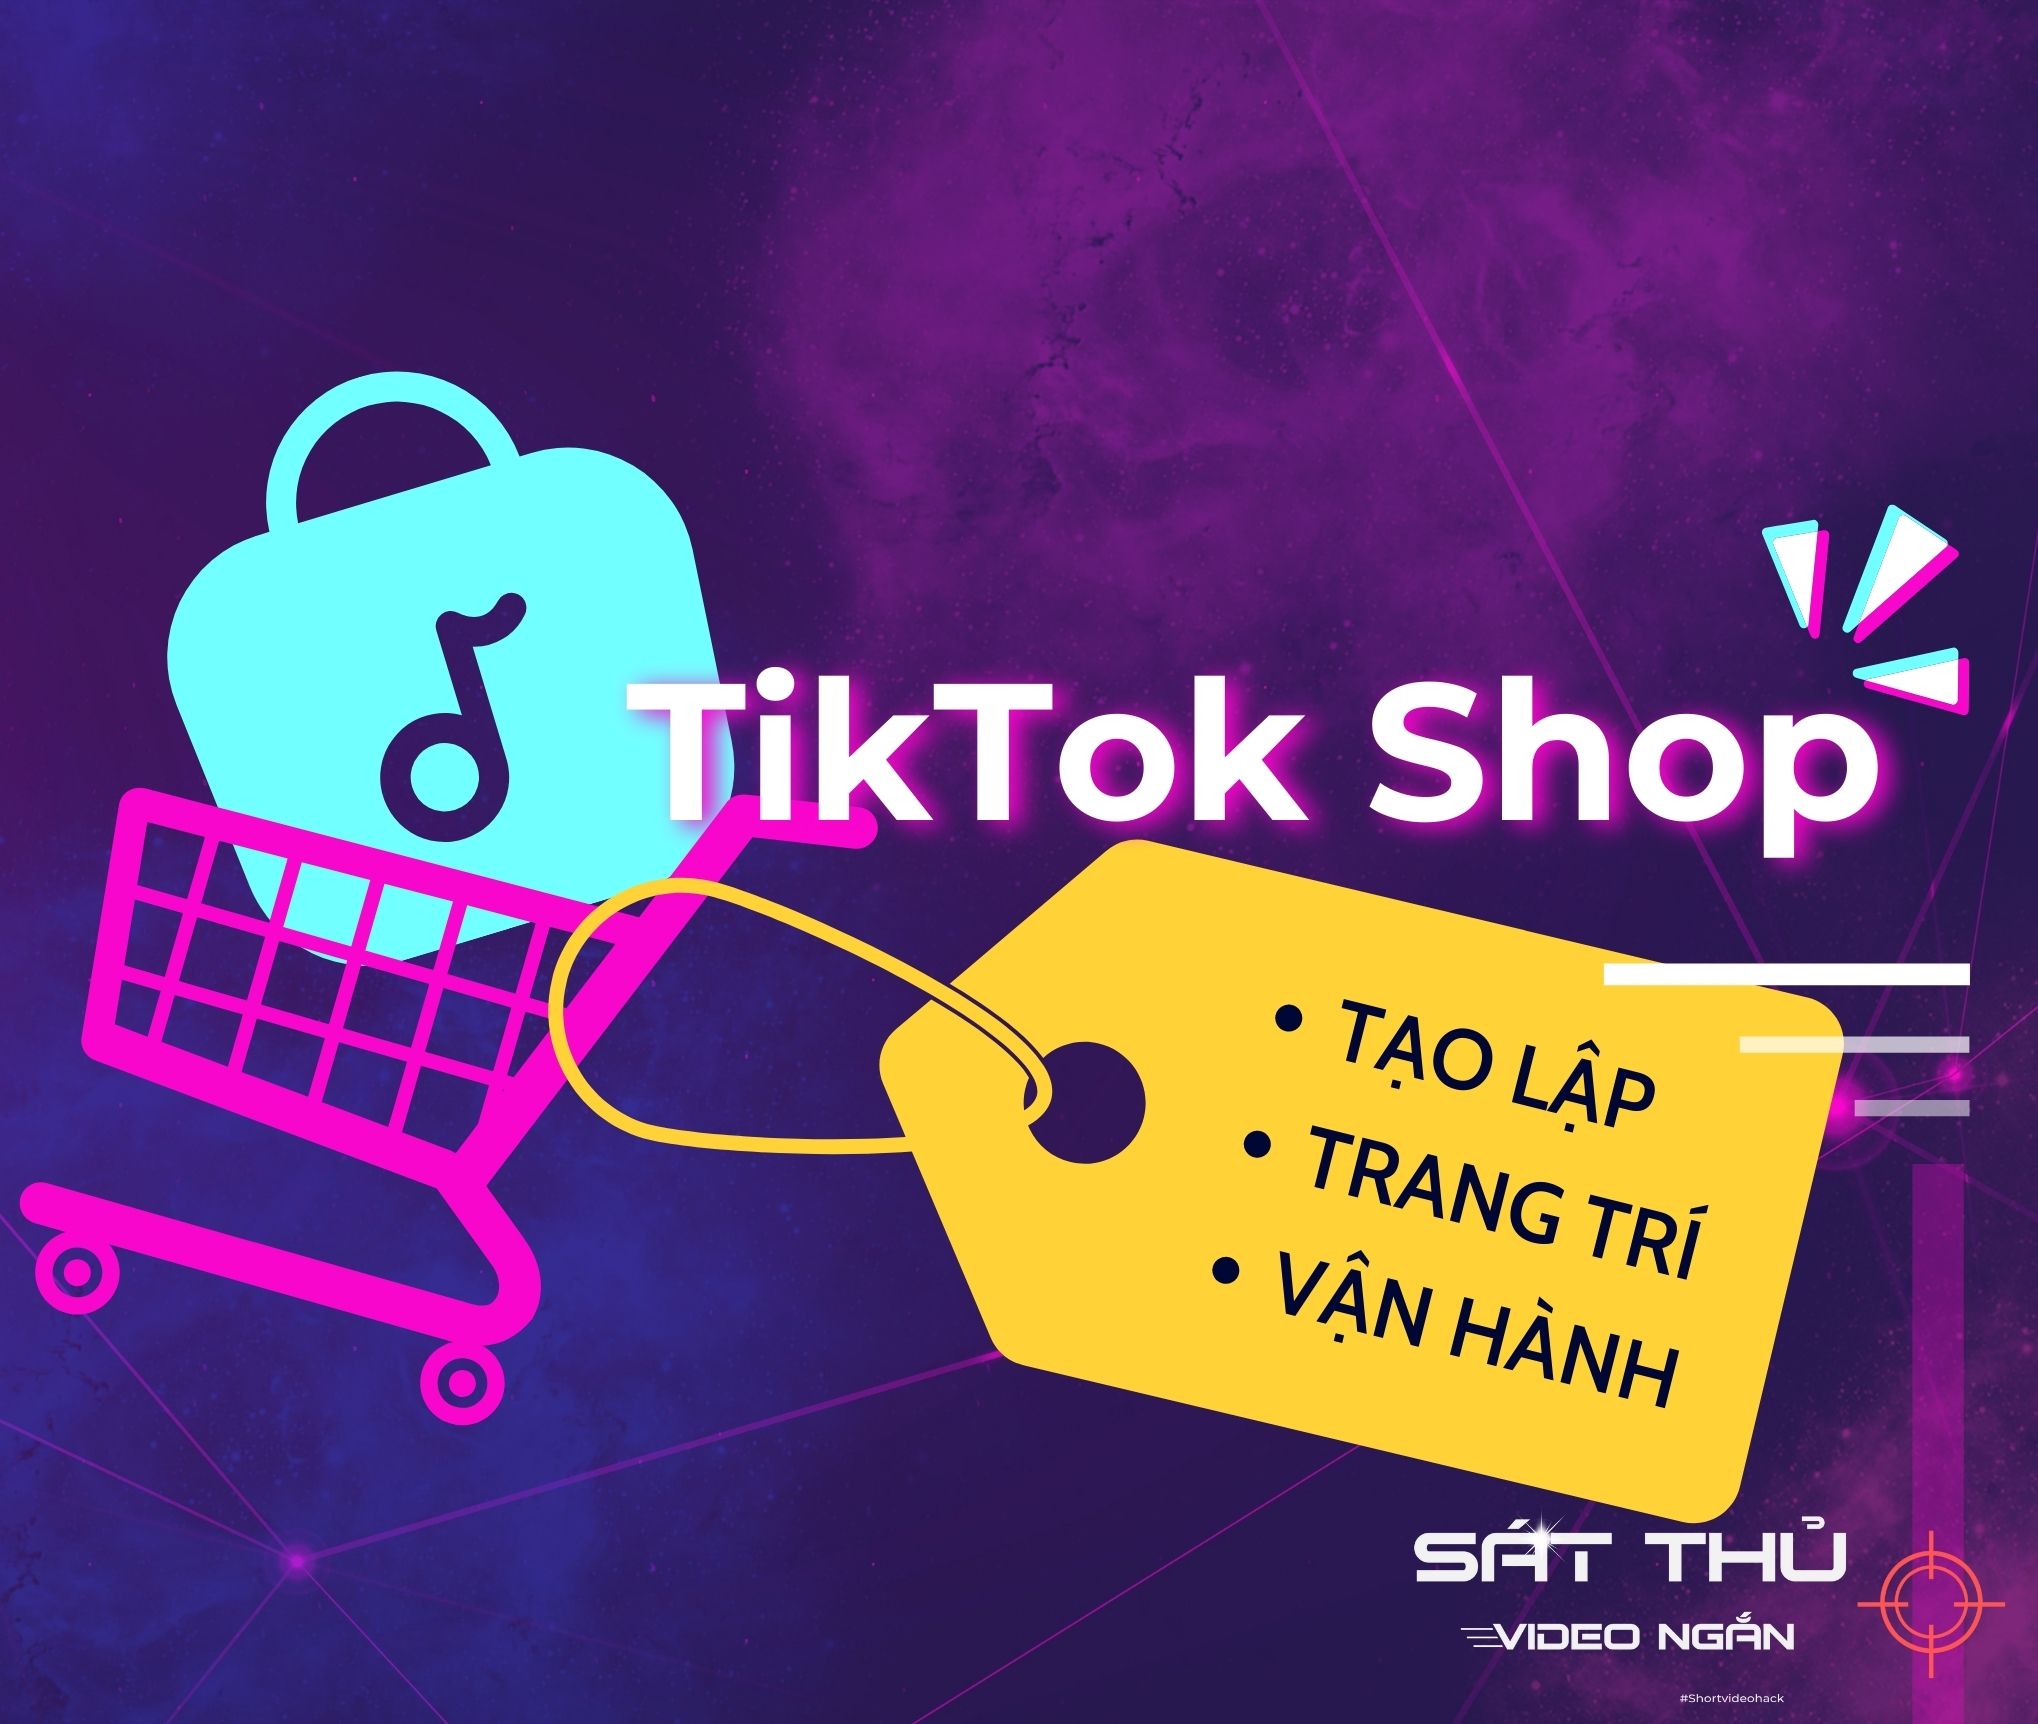 TikTok Shop - Tạo lập, trang trí, vận hành